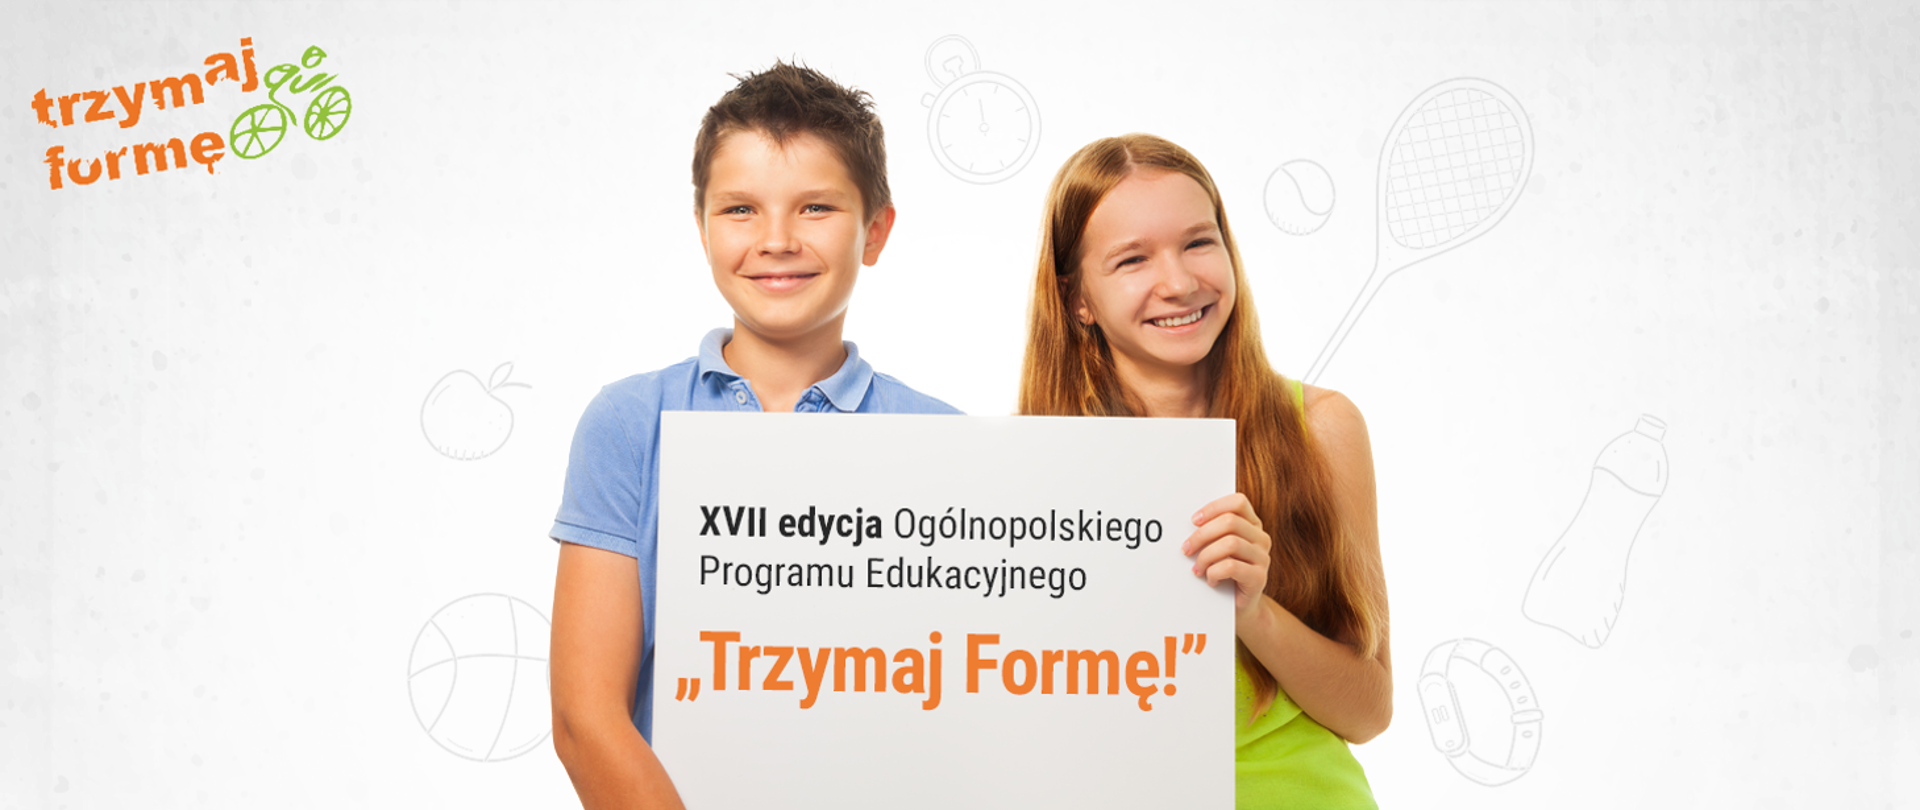 Na zdjęciu na białym tle dwoje nastolatków dziewczyna i chłopak trzyma planszę z napisem XVII edycja Ogólnopolskiego Programu Edukacyjnego Trzymaj Formę, w lewym górnym roku zdjęcia logo programu.